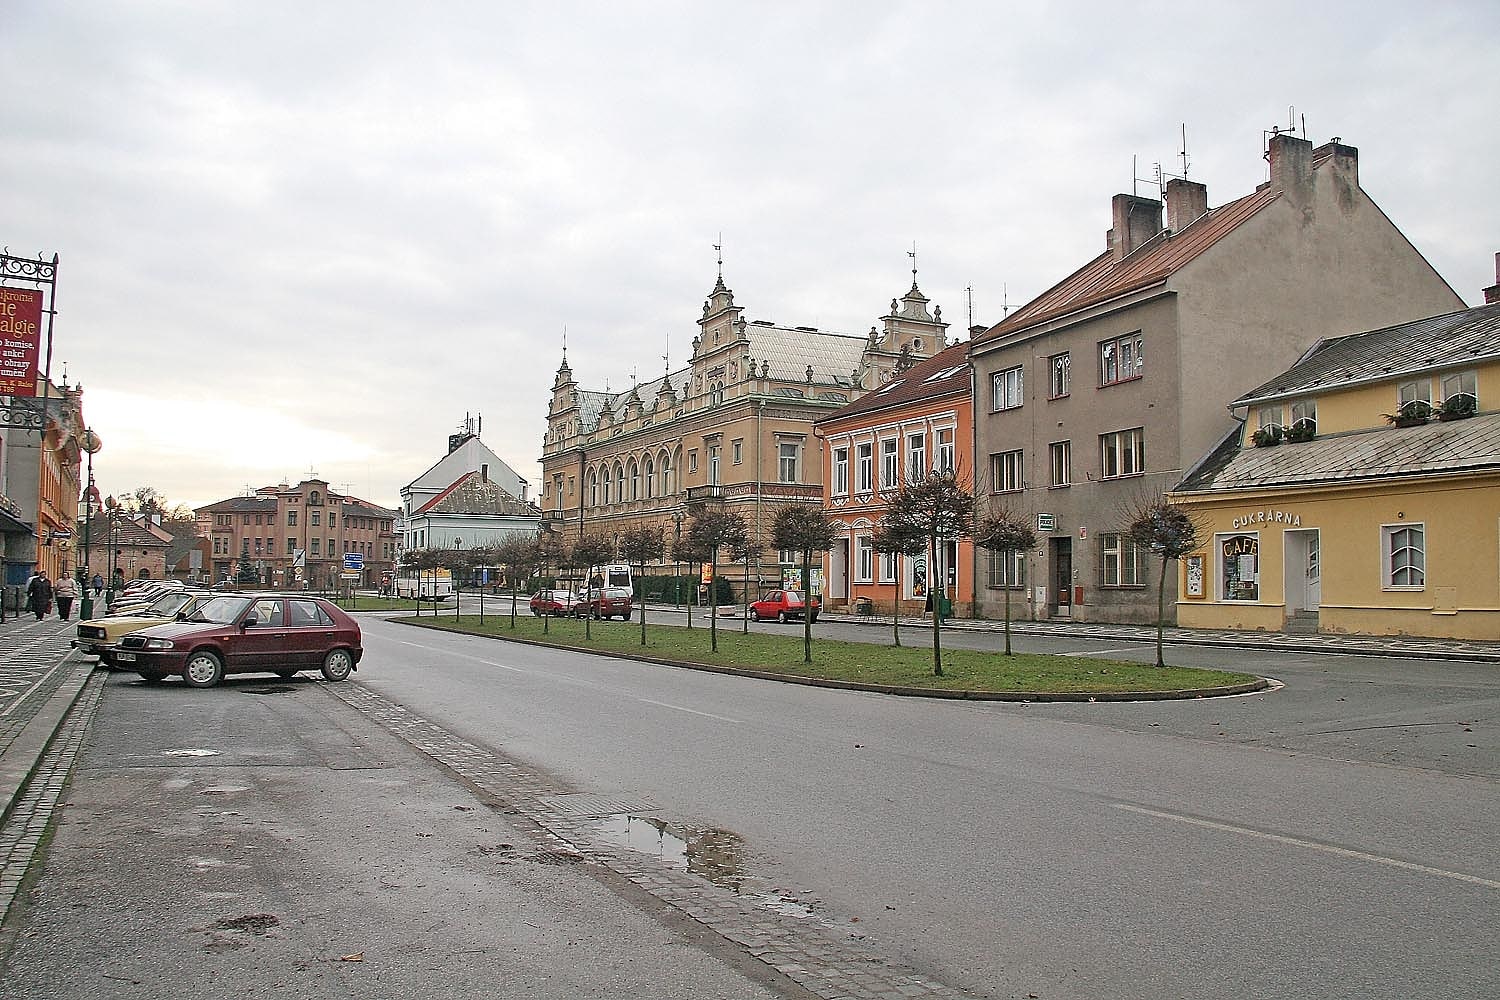 Lázně Bělohrad, Czech Republic